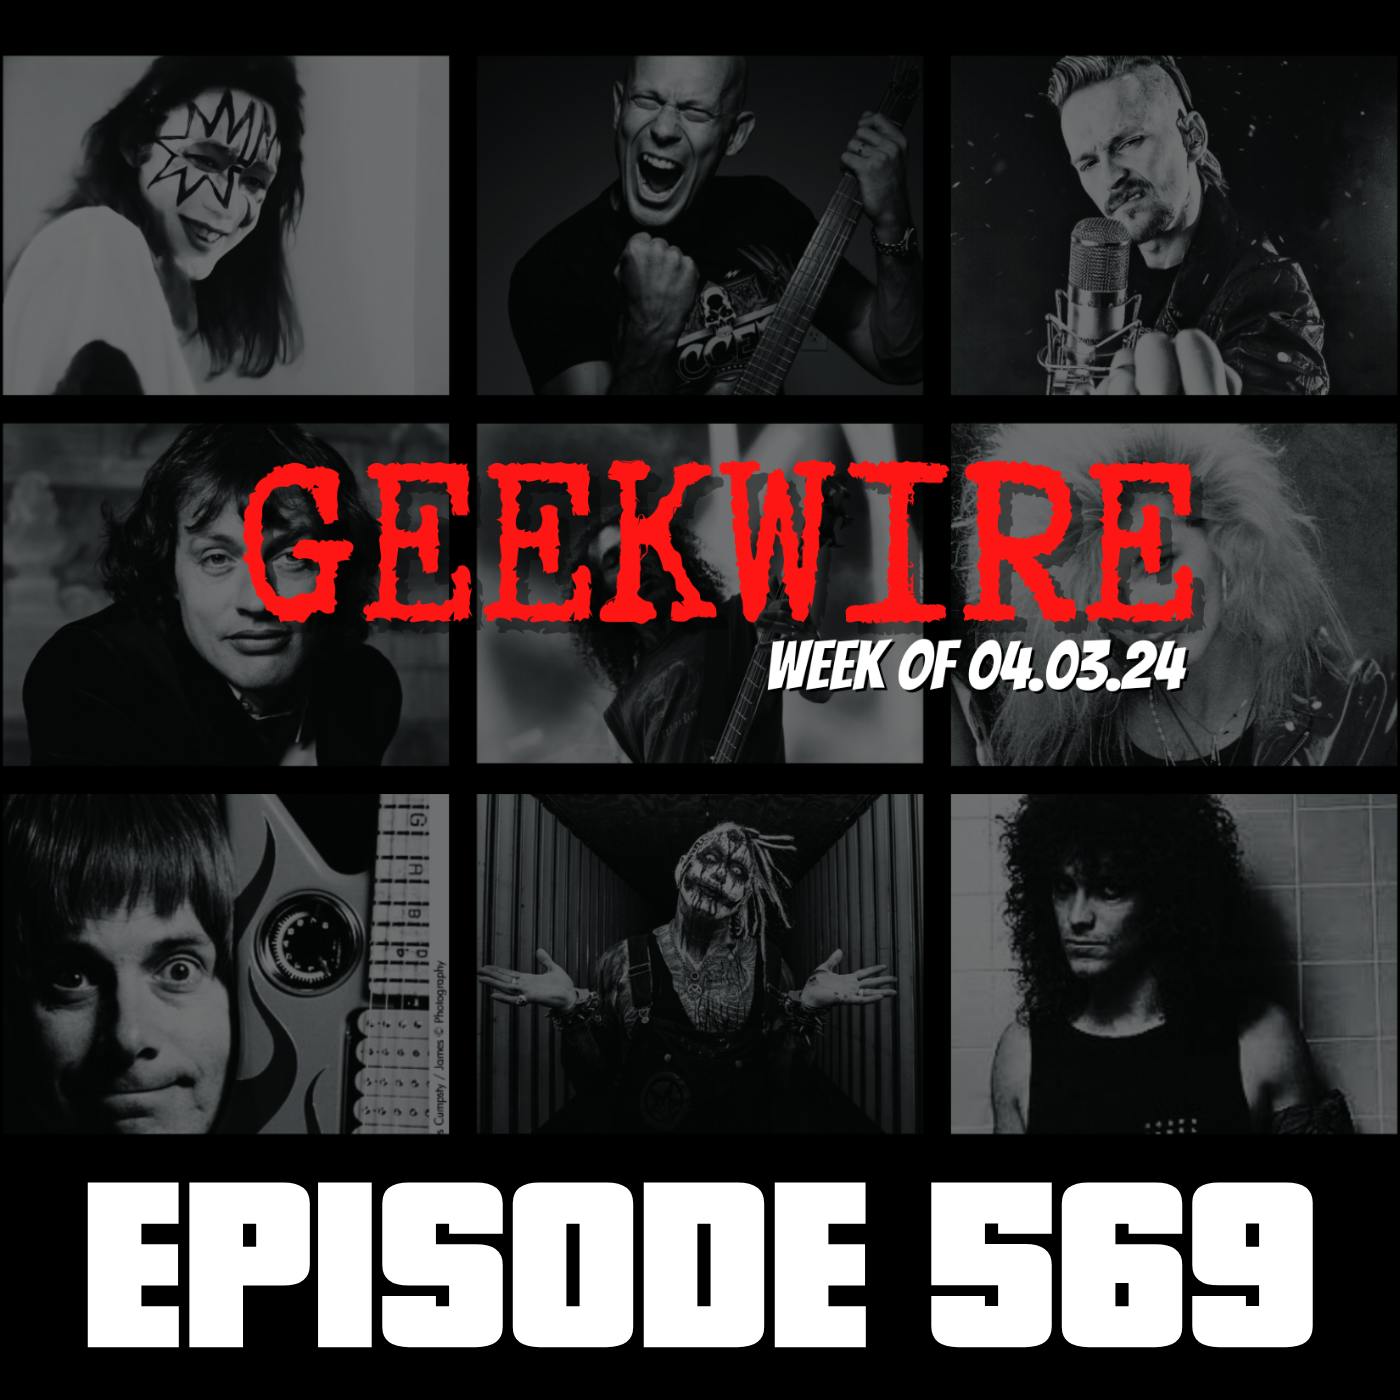 Geekwire Week of 04.03.24 - Ep569